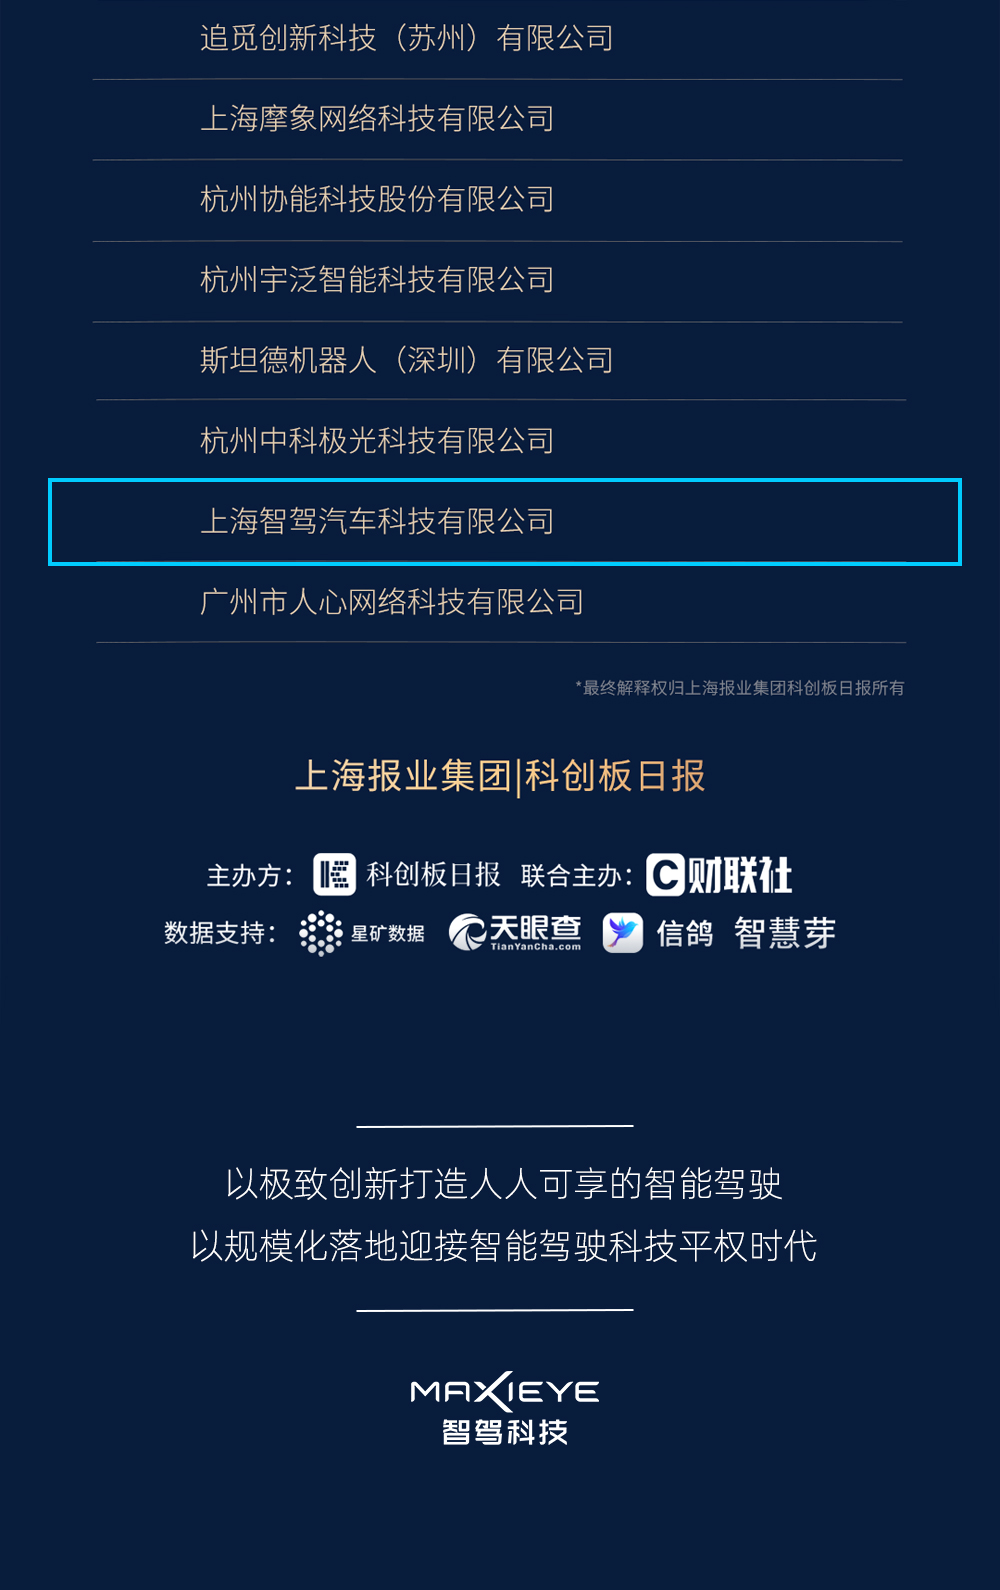 智驾科技MAXIEYE获评「2021中国科创好公司称号」(图5)